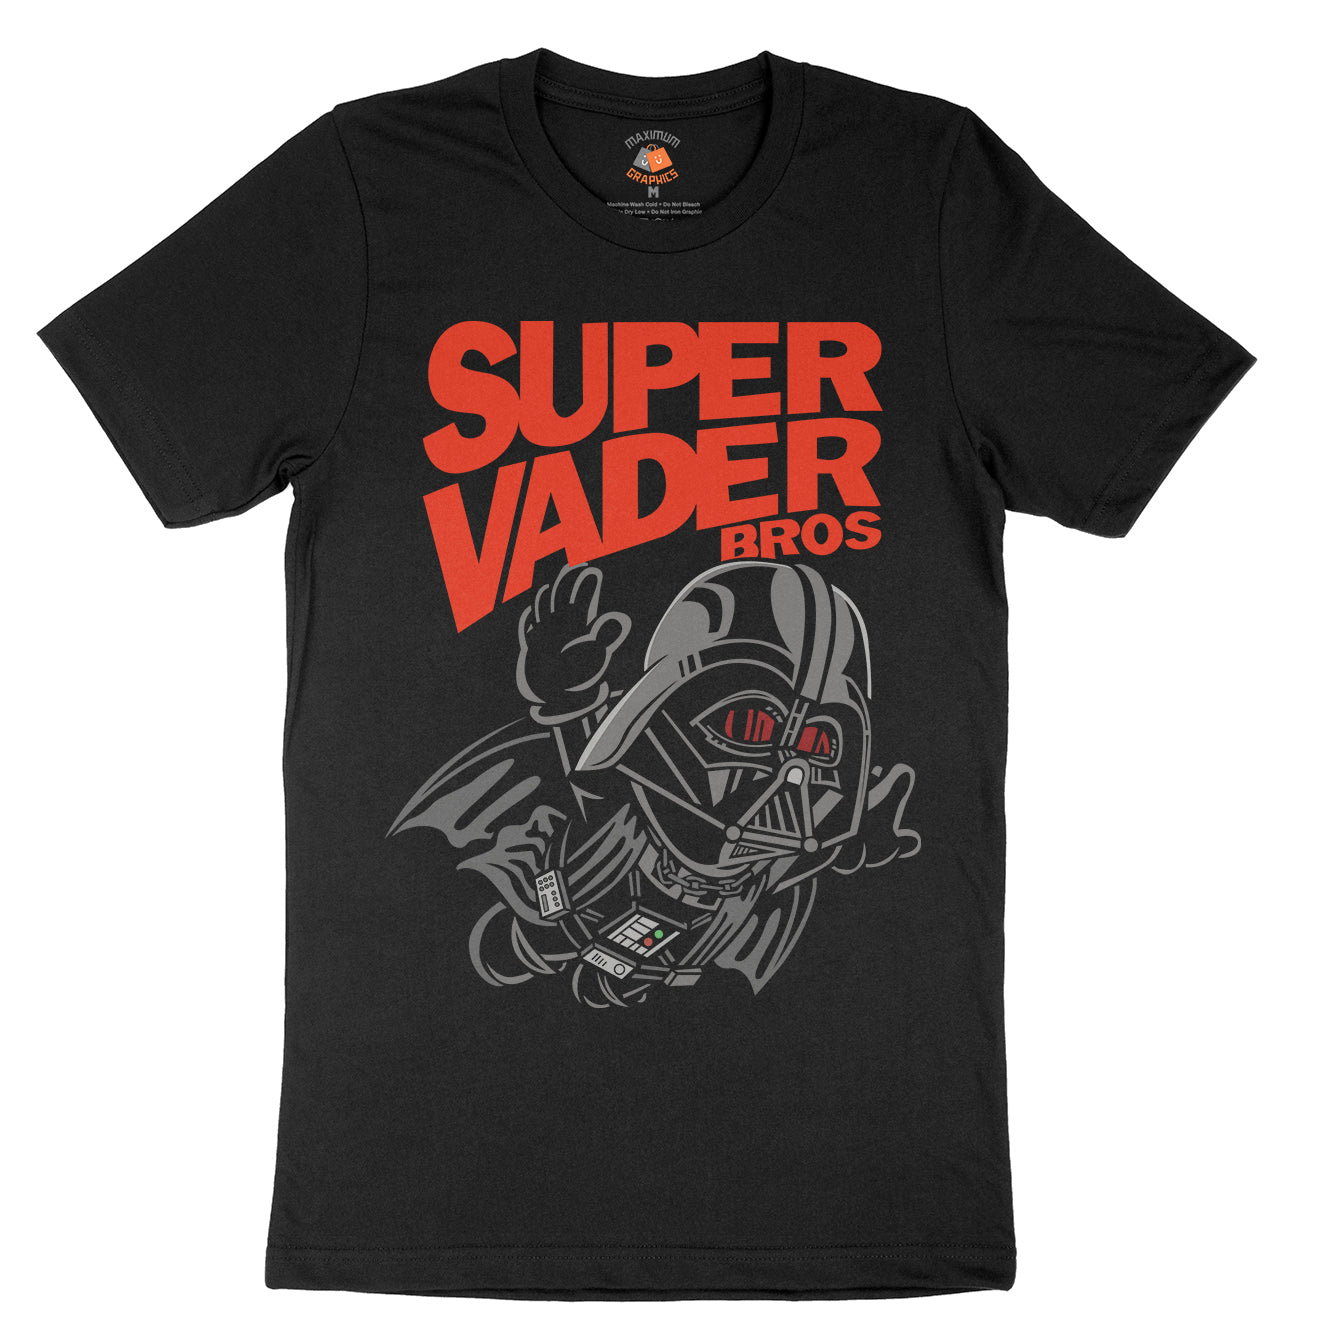 Super Vader